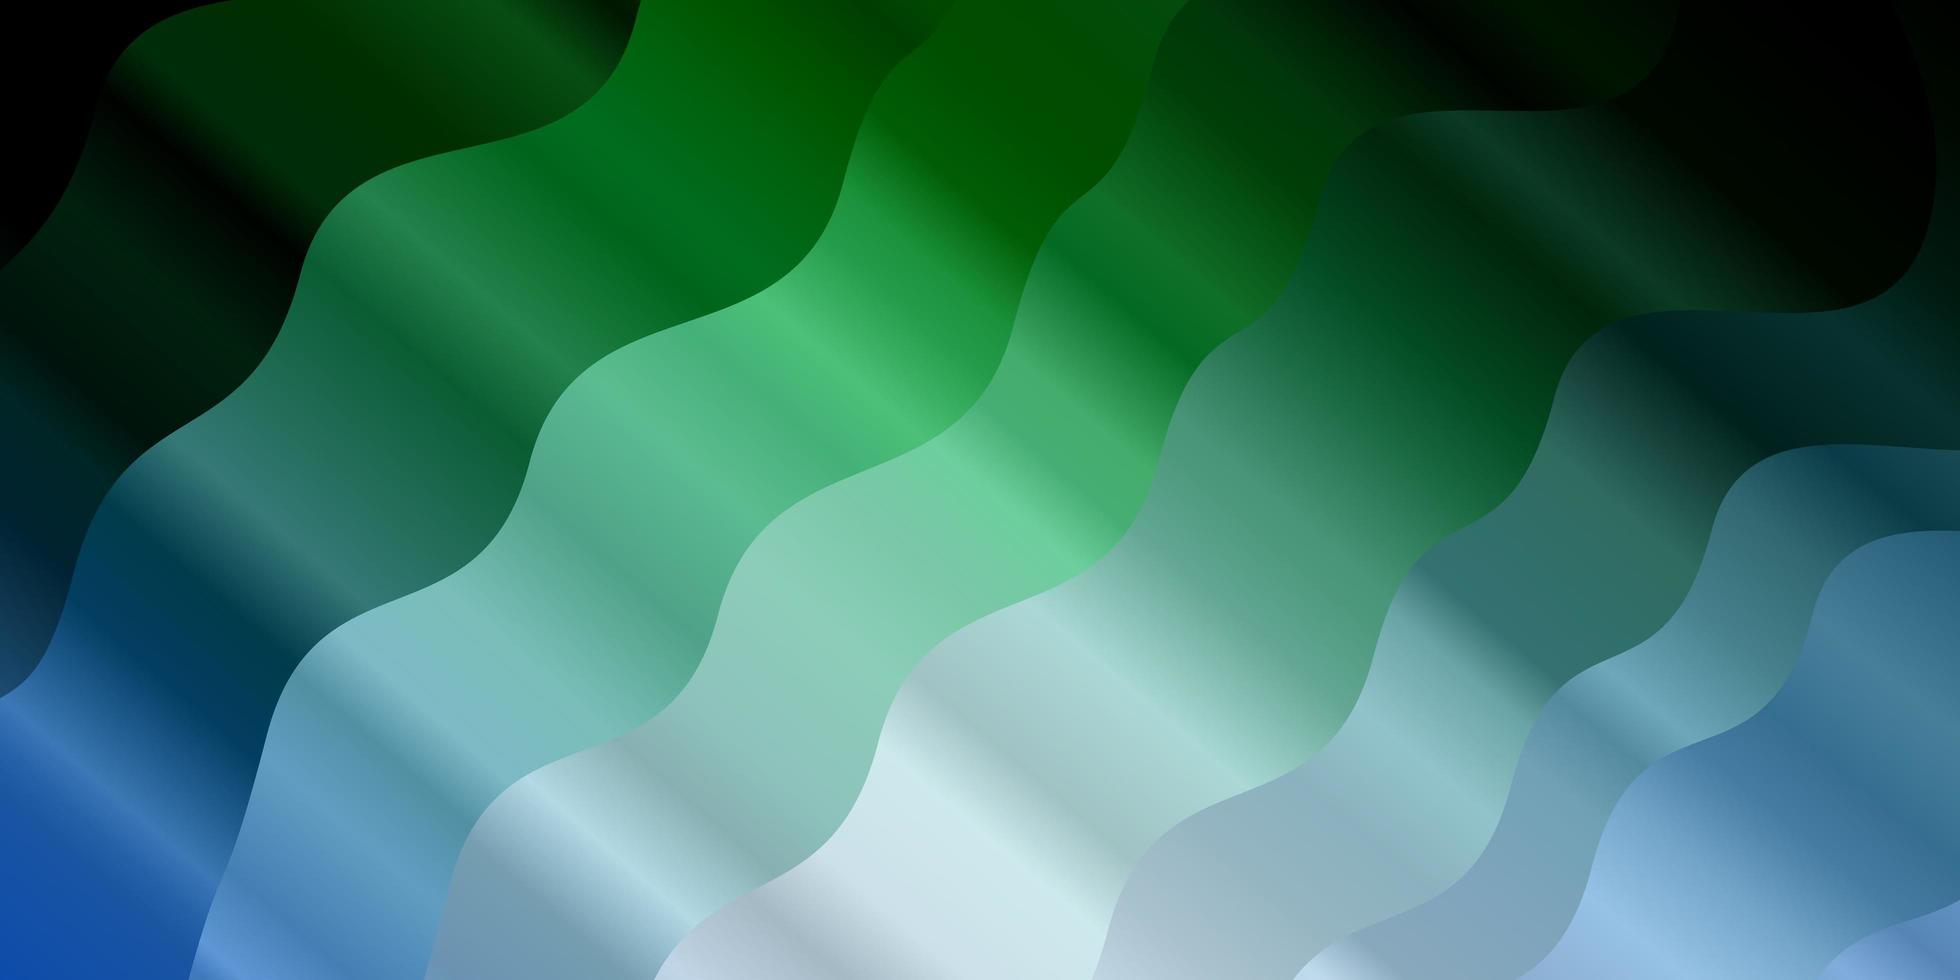 textura de vetor azul claro verde com linhas irônicas amostra brilhante com formas coloridas de linhas curvas design inteligente para suas promoções